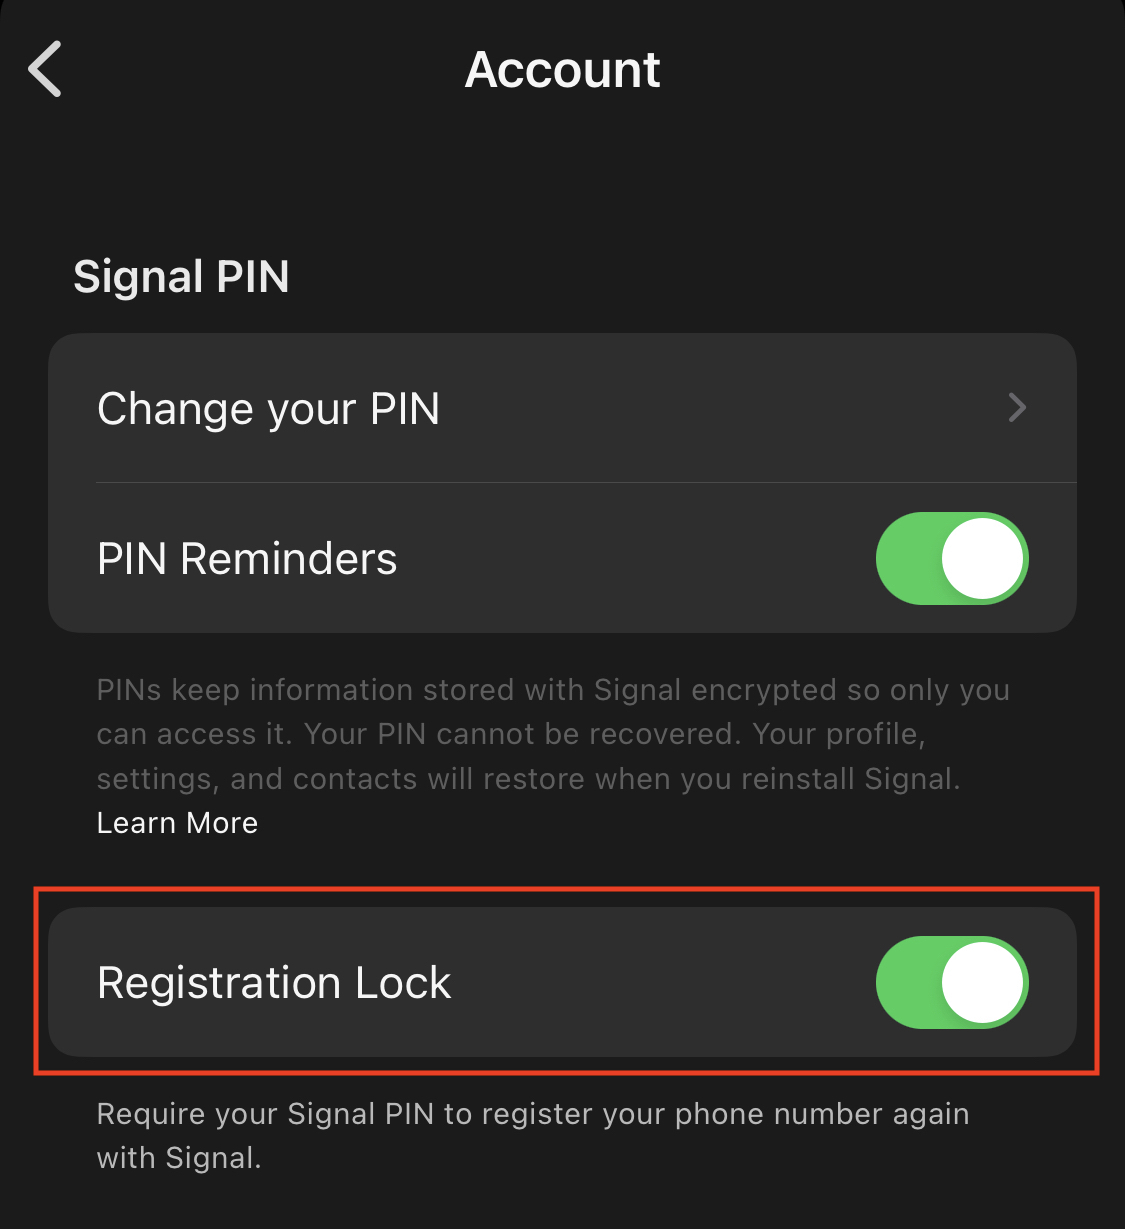 Registration Lock